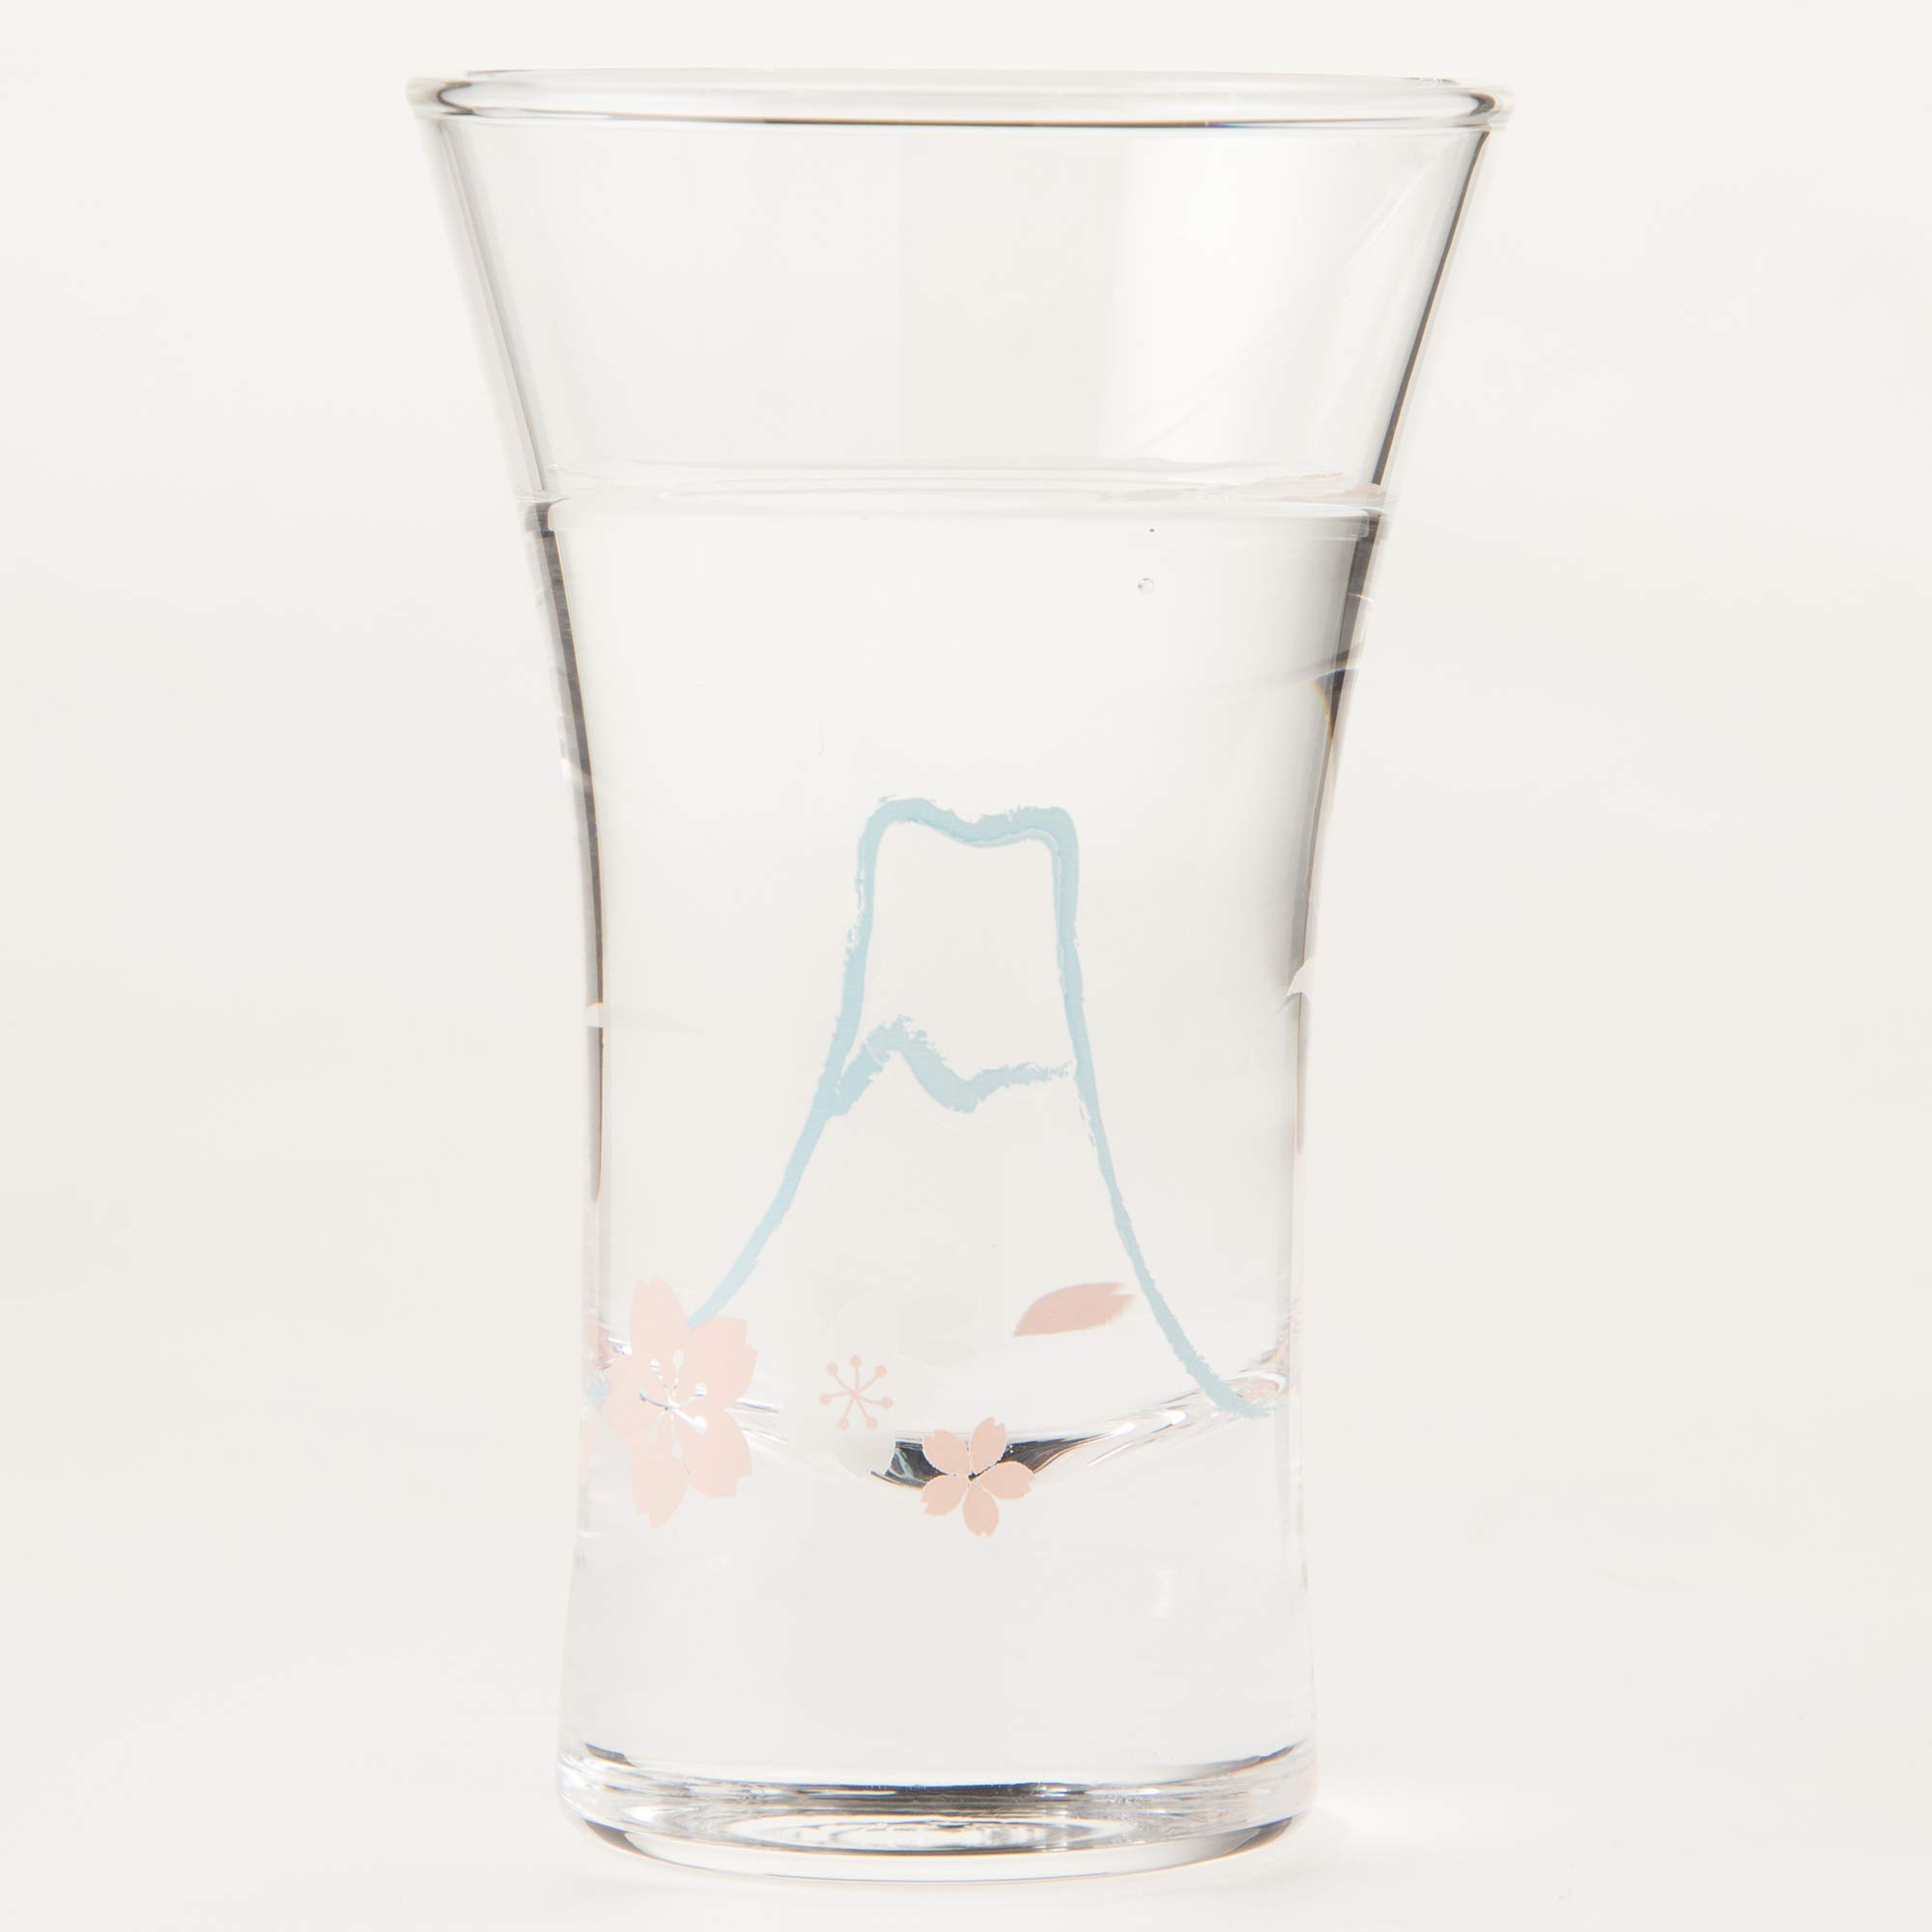 東洋佐々木ガラス Toyo Sasaki Glass 09112-J346 Cold Sake Glass Cup, Mt. Fuji Pattern, 4.3 fl oz (110 ml)